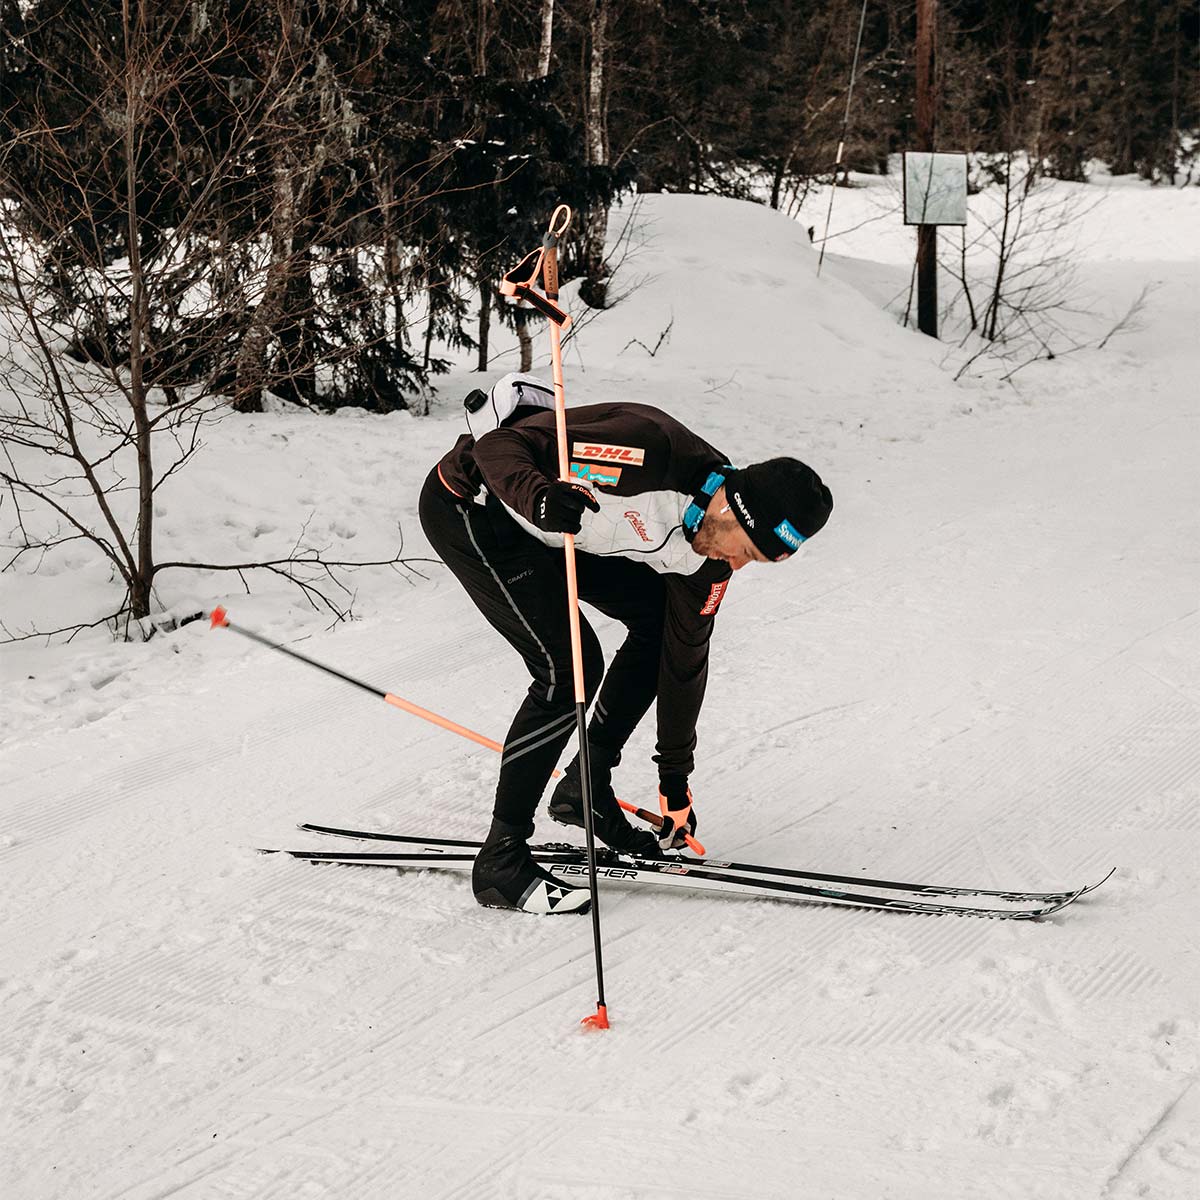 Emil iversen tar på seg langrennski i skiløype